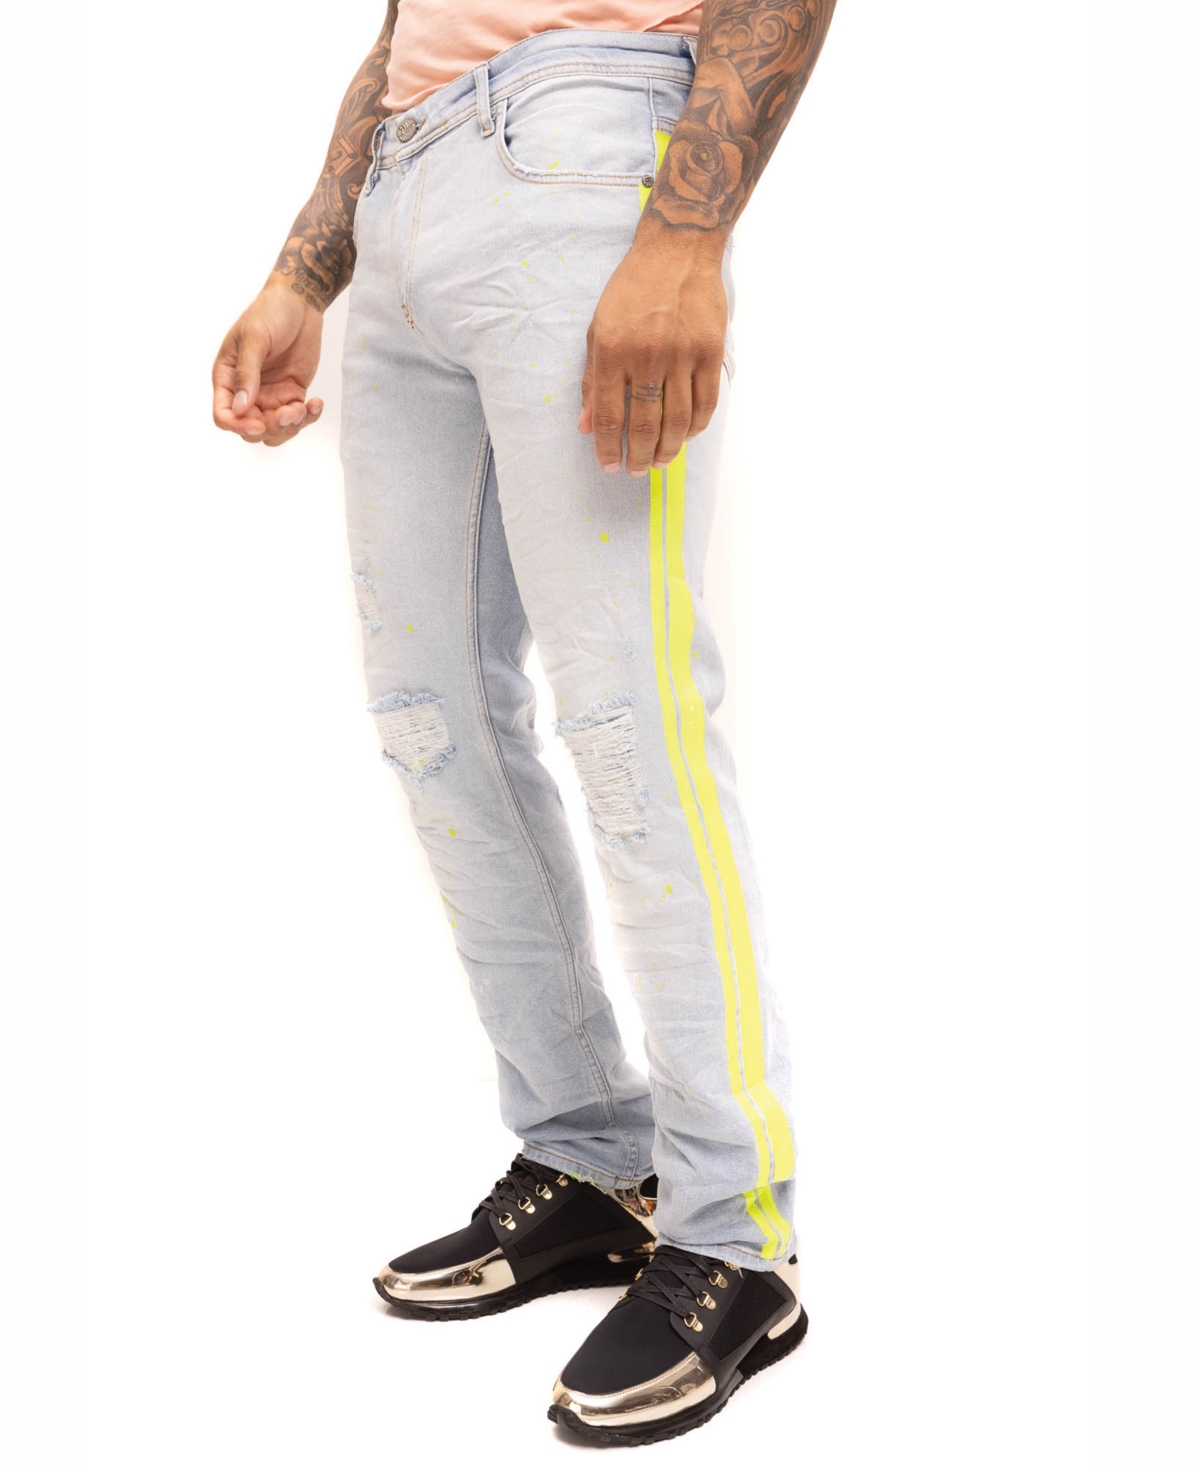 Men's Modern Splattered Stripe Jeans - Indigo